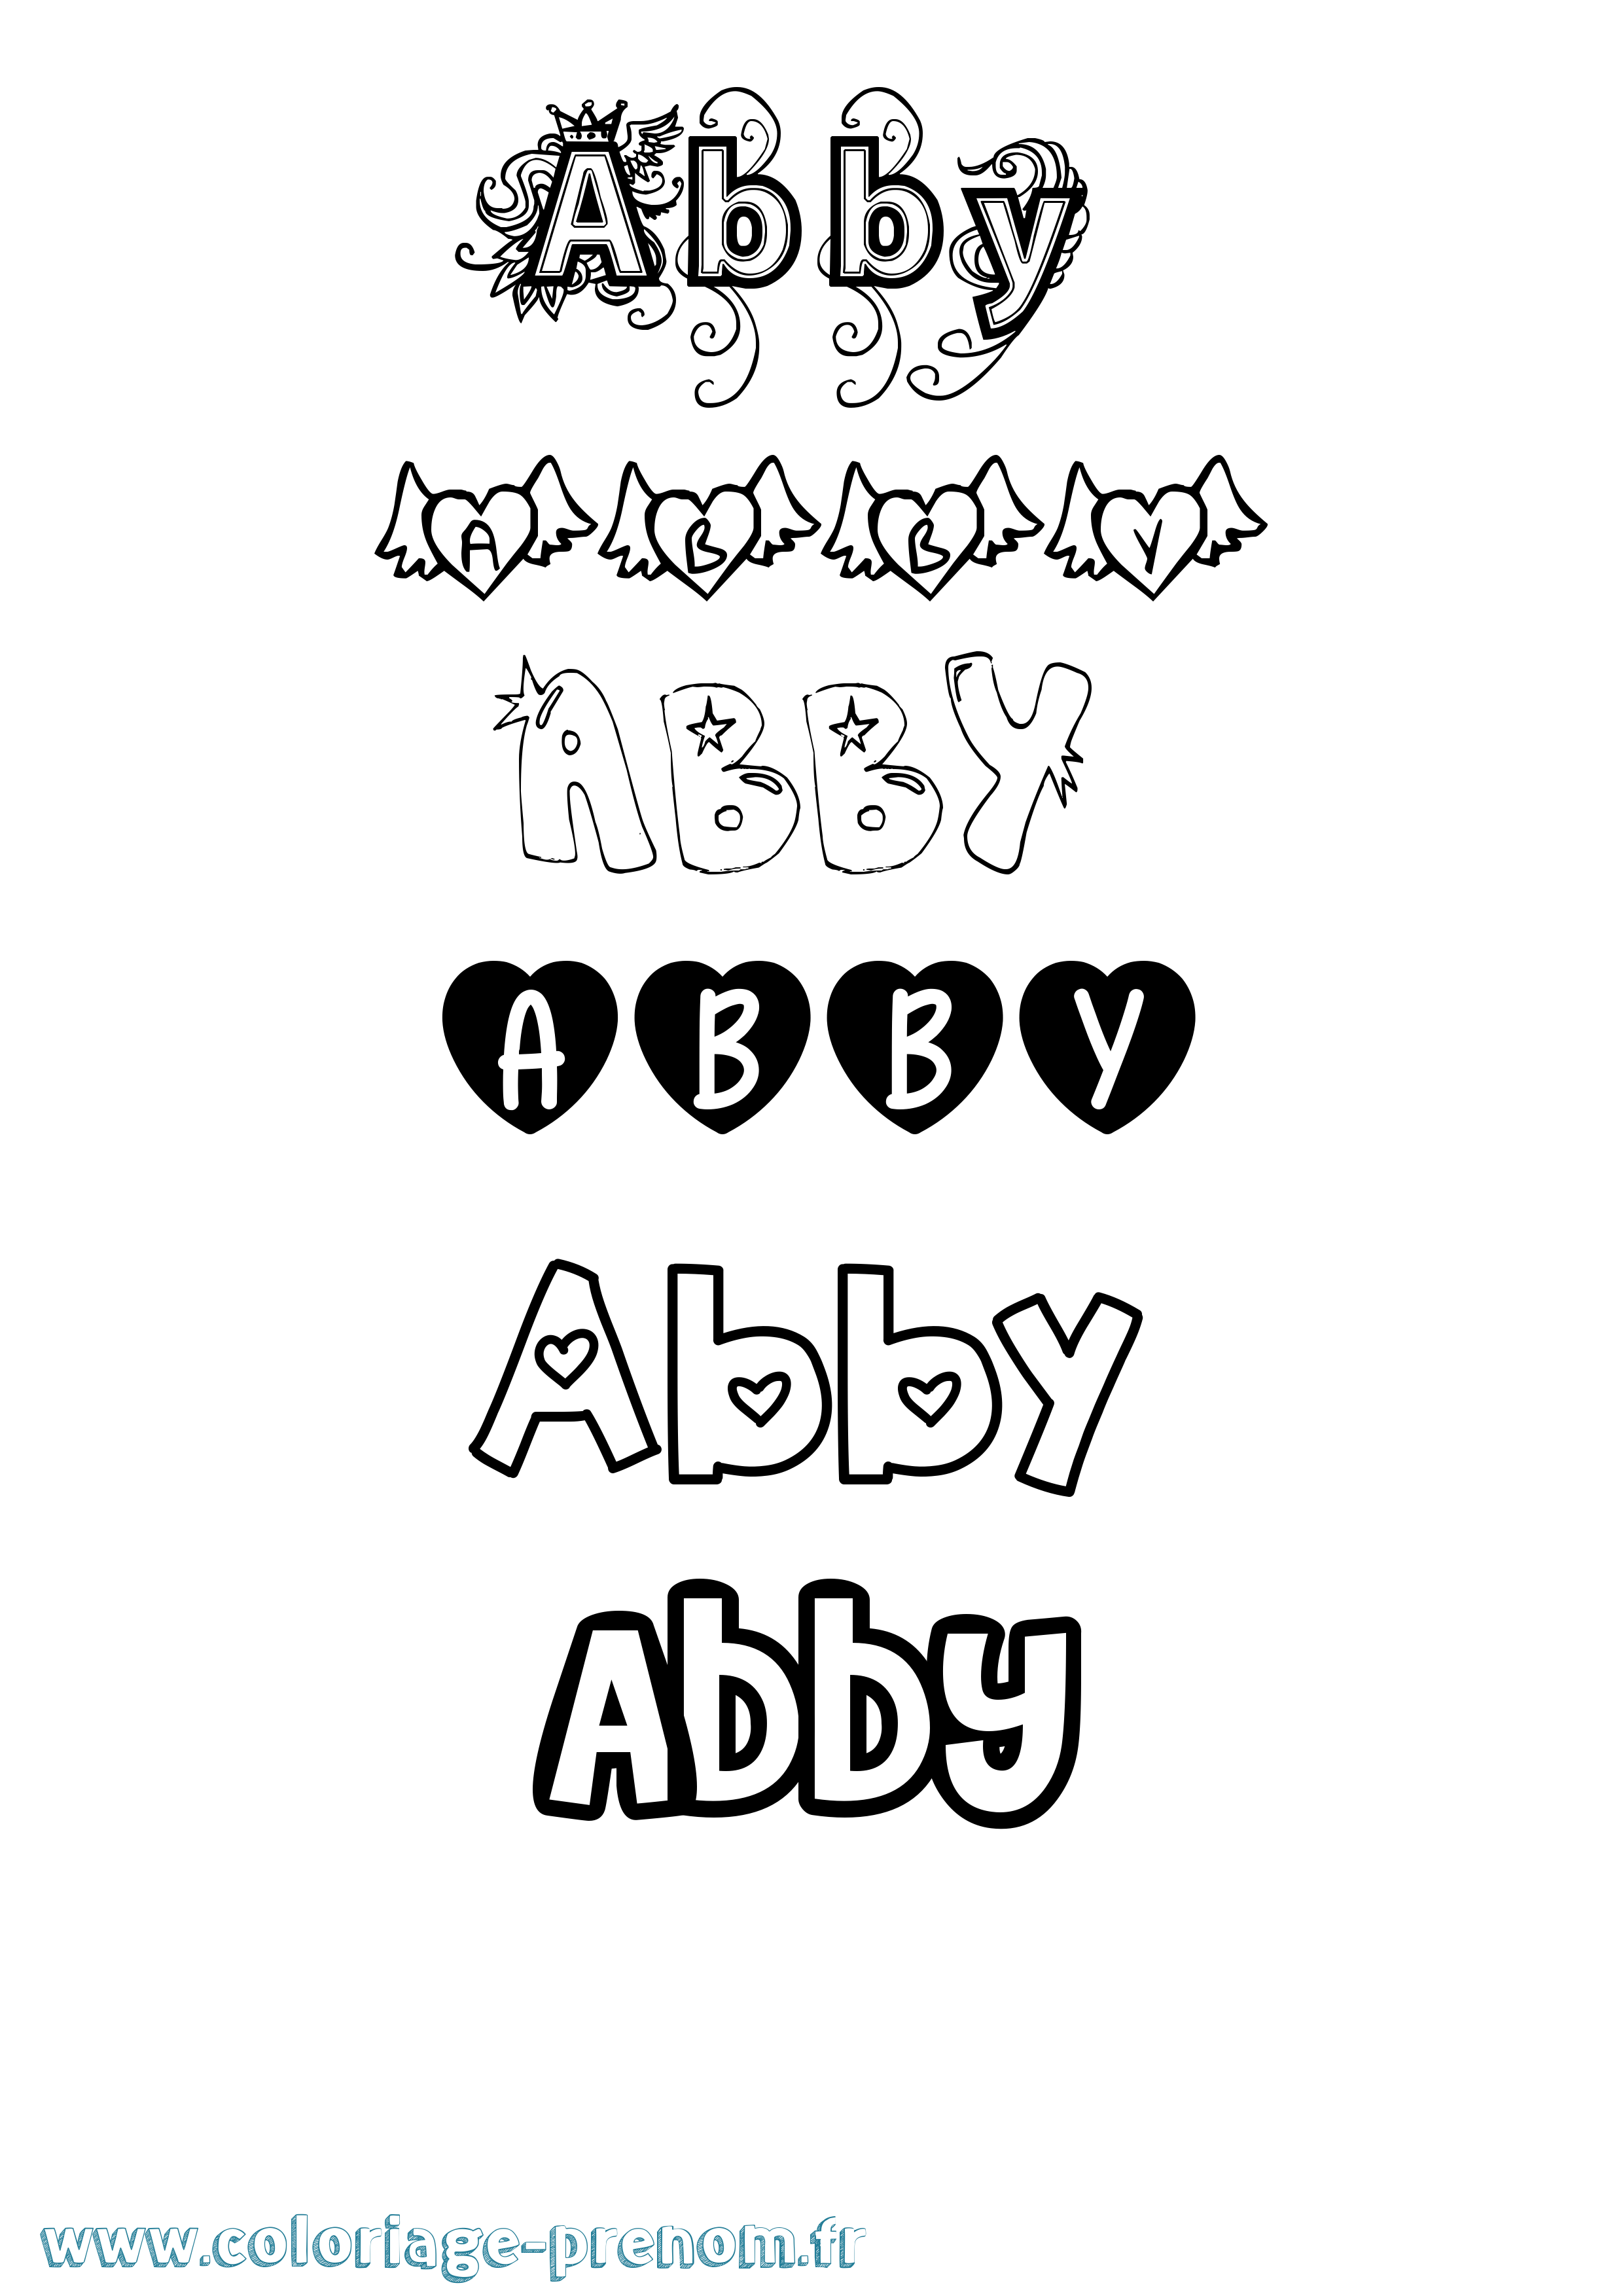 Coloriage prénom Abby Girly